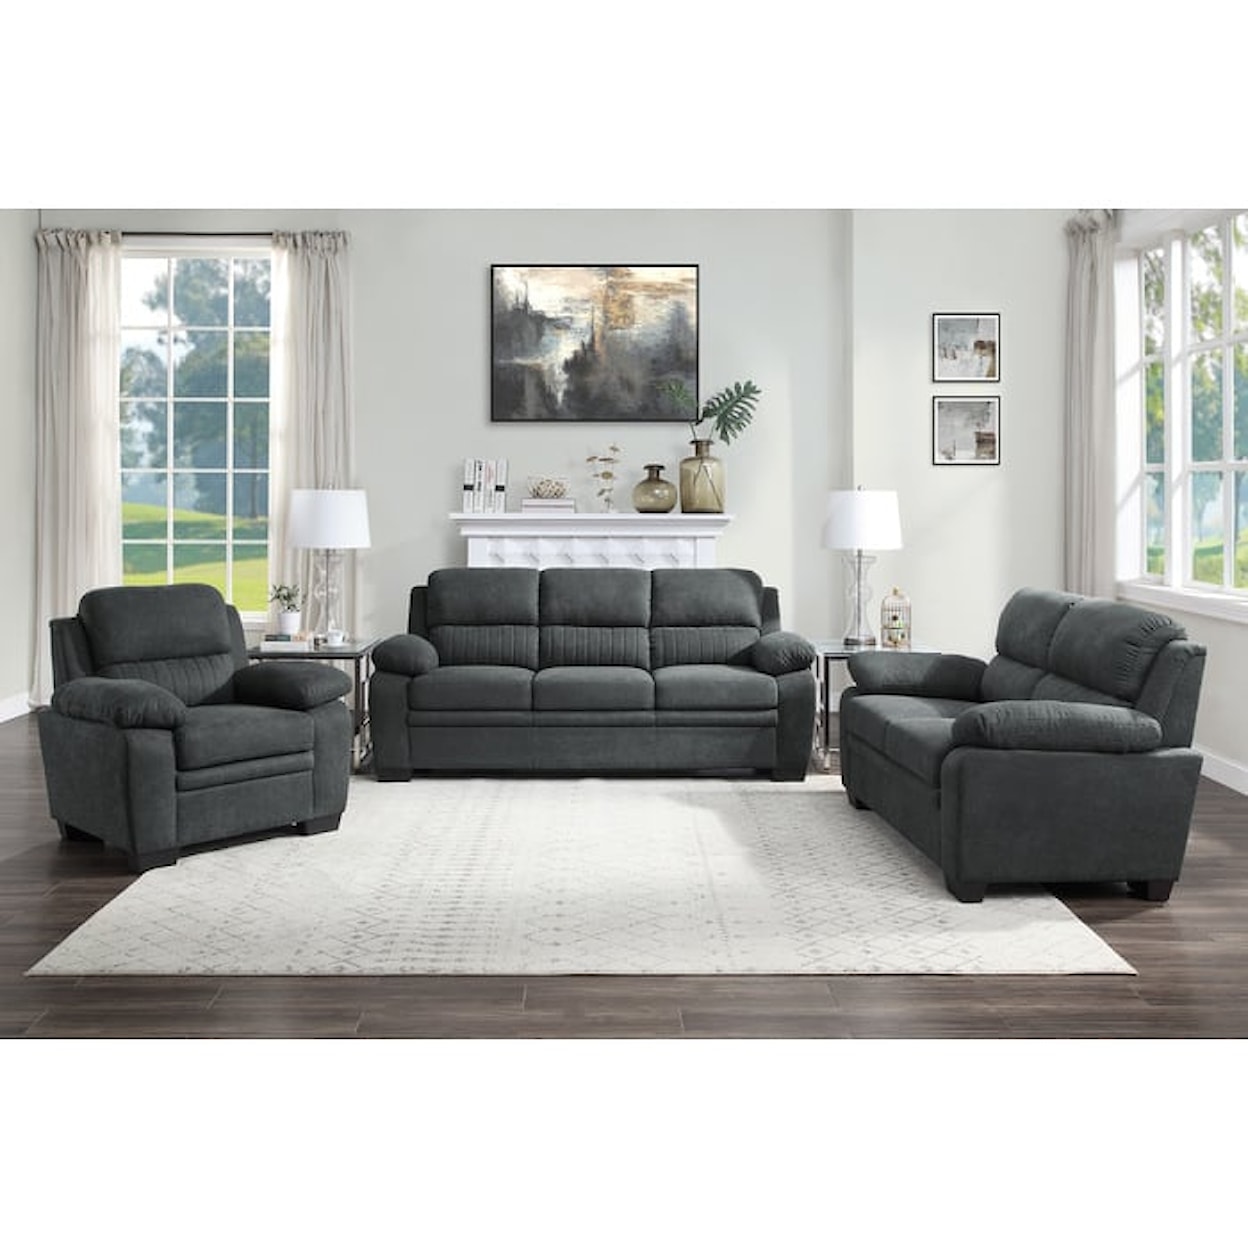 Homelegance Furniture Holleman 2-Piece Living Room Set